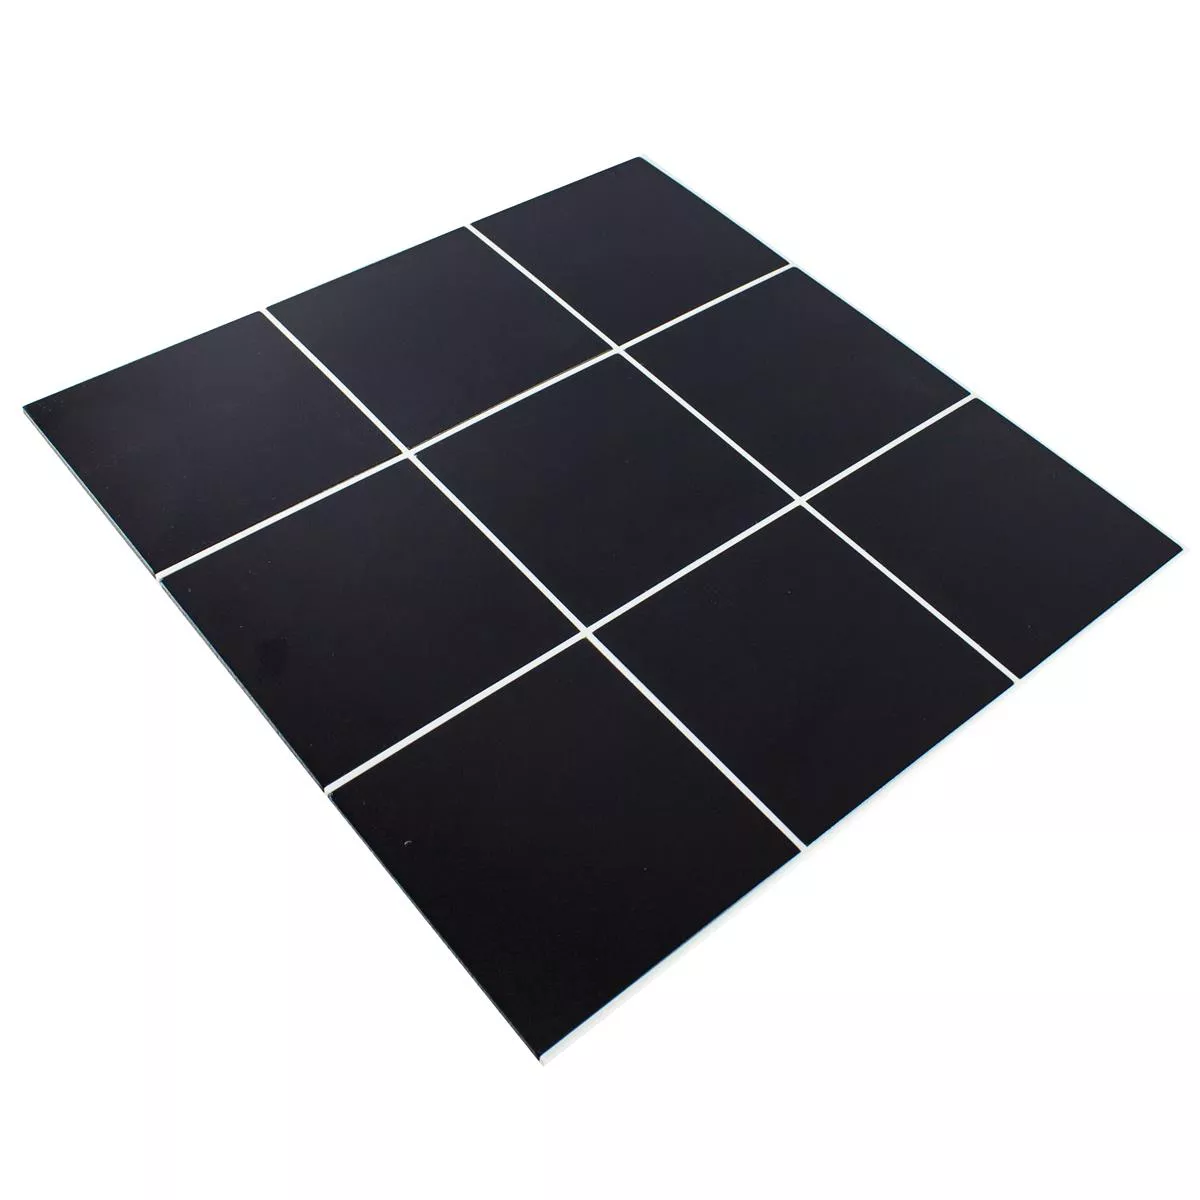 Aluminium Mosaic Tiles Lenora Self Adhesive Black